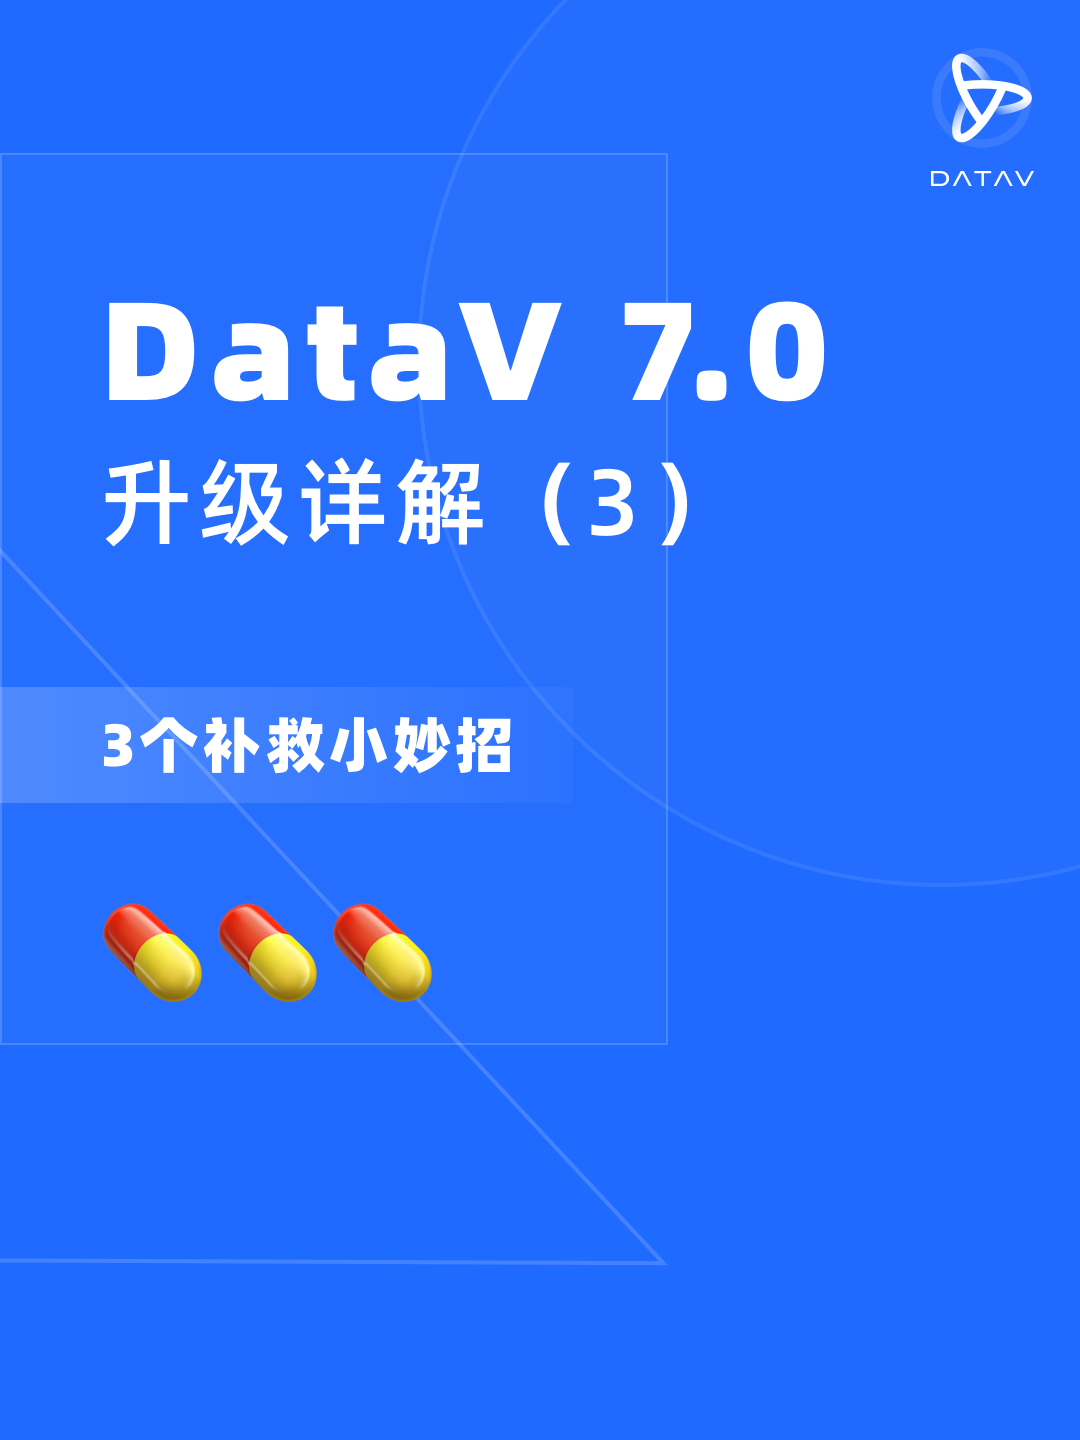 DataV 7.0升级详解（3）-- 三个补救小妙招